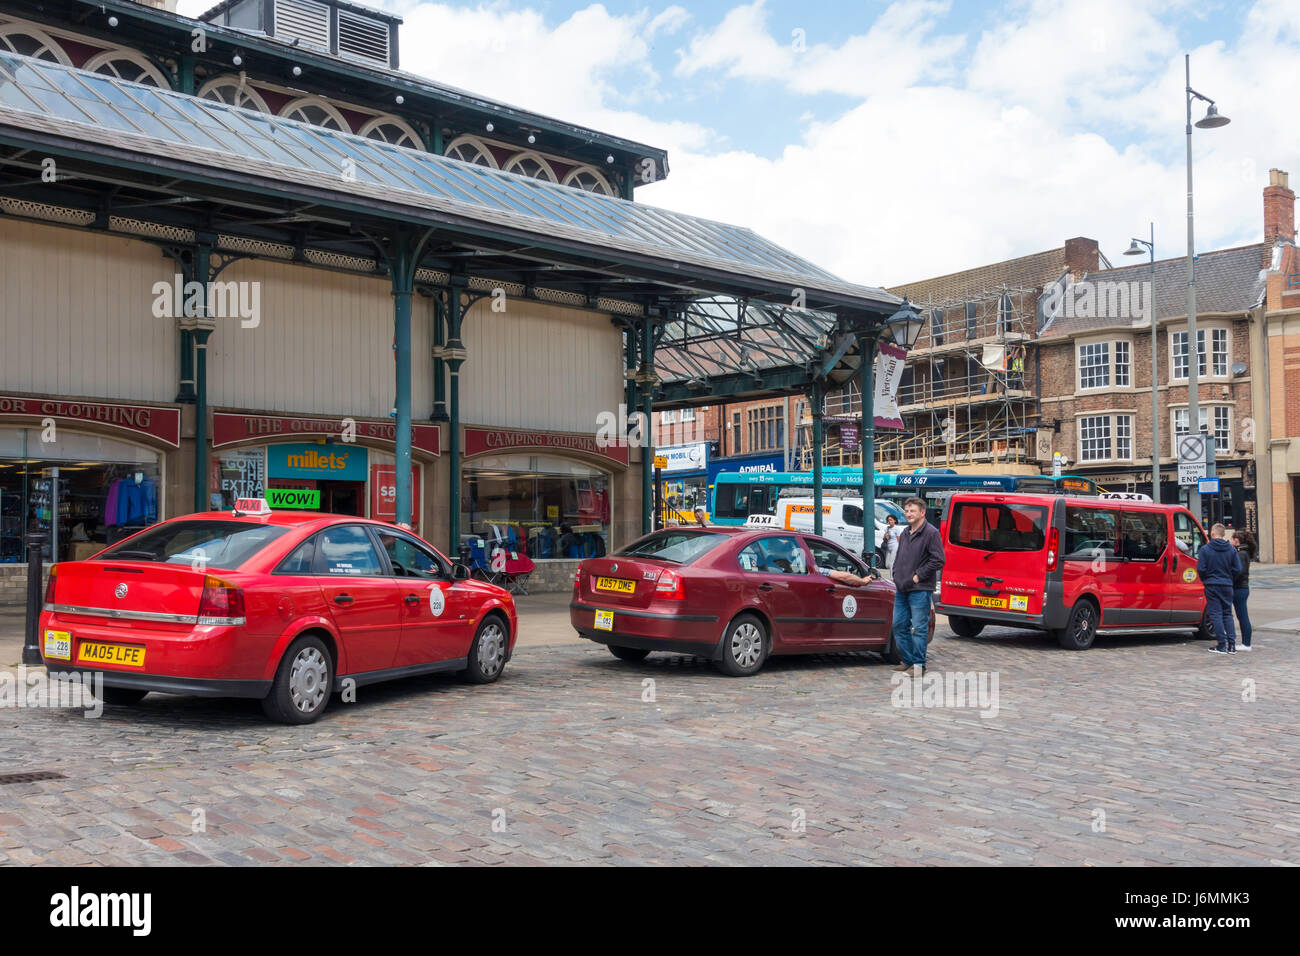 Taxis Les taxis rouges en attente dans la place du marché à Durham Darlington Co. Banque D'Images